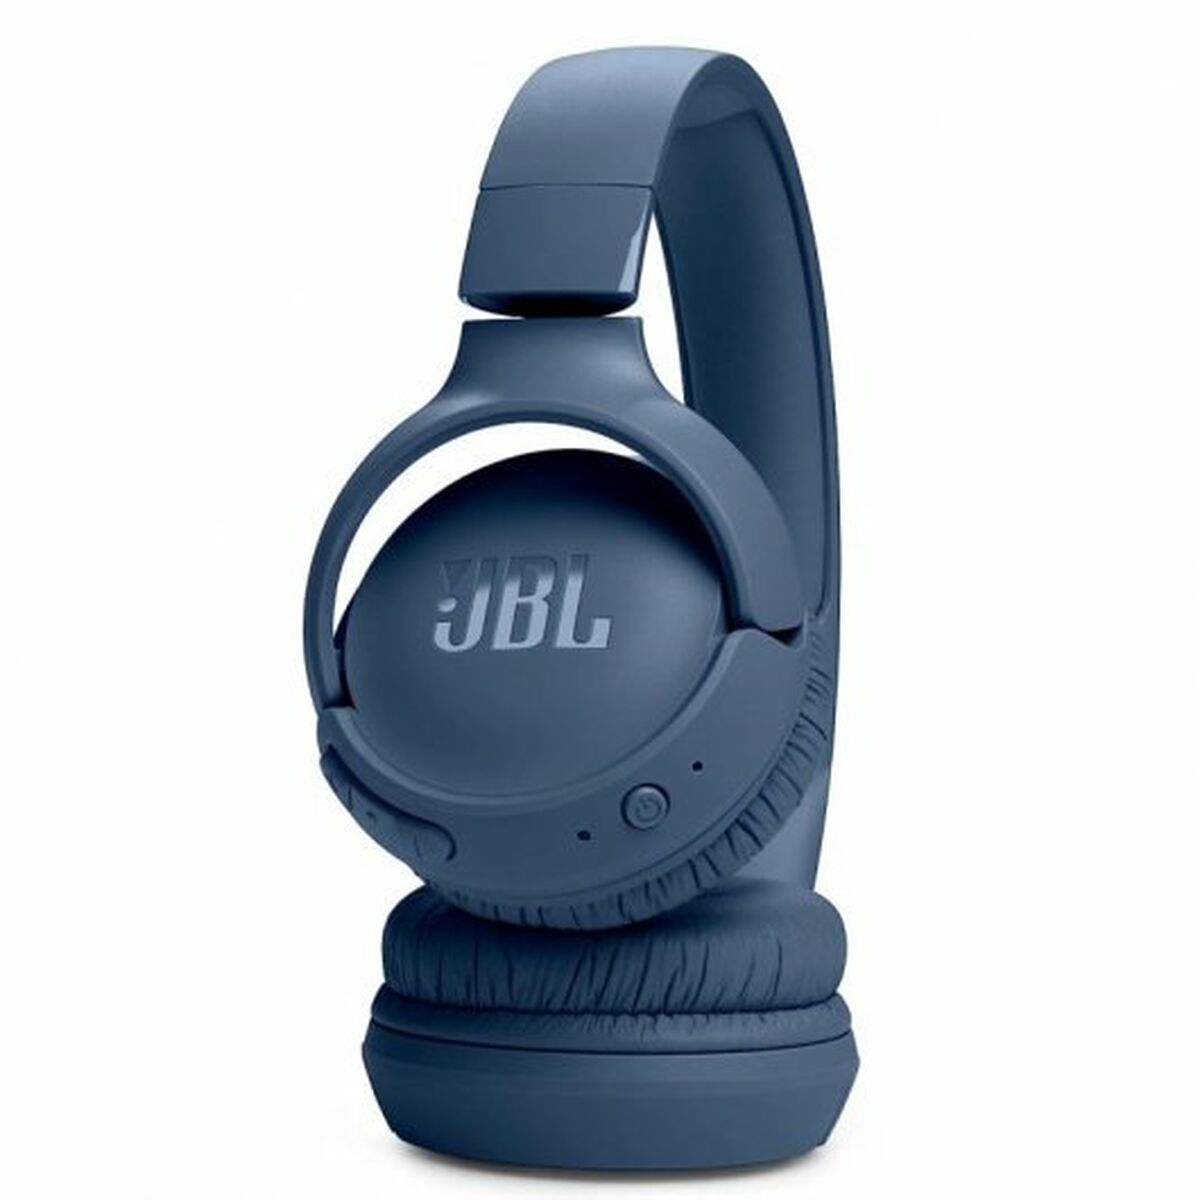 Kaufe Kopfhörer mit Mikrofon JBL 520BT Blau bei AWK Flagship um € 84.00